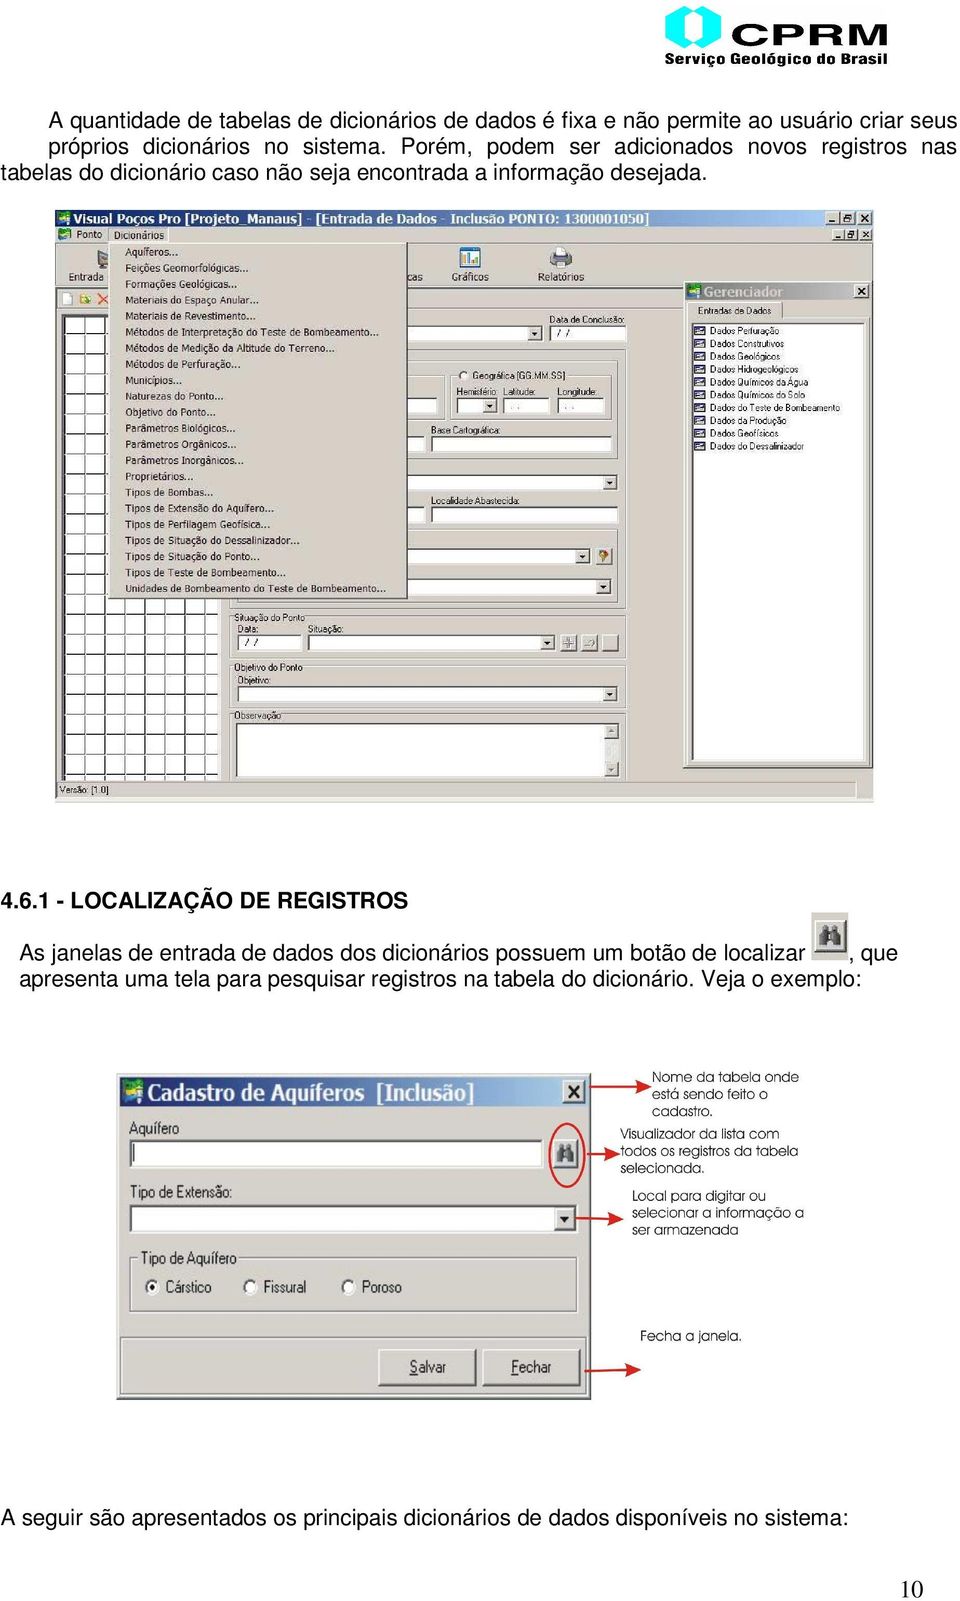 1 - LOCALIZAÇÃO DE REGISTROS As janelas de entrada de dados dos dicionários possuem um botão de localizar, que apresenta uma tela